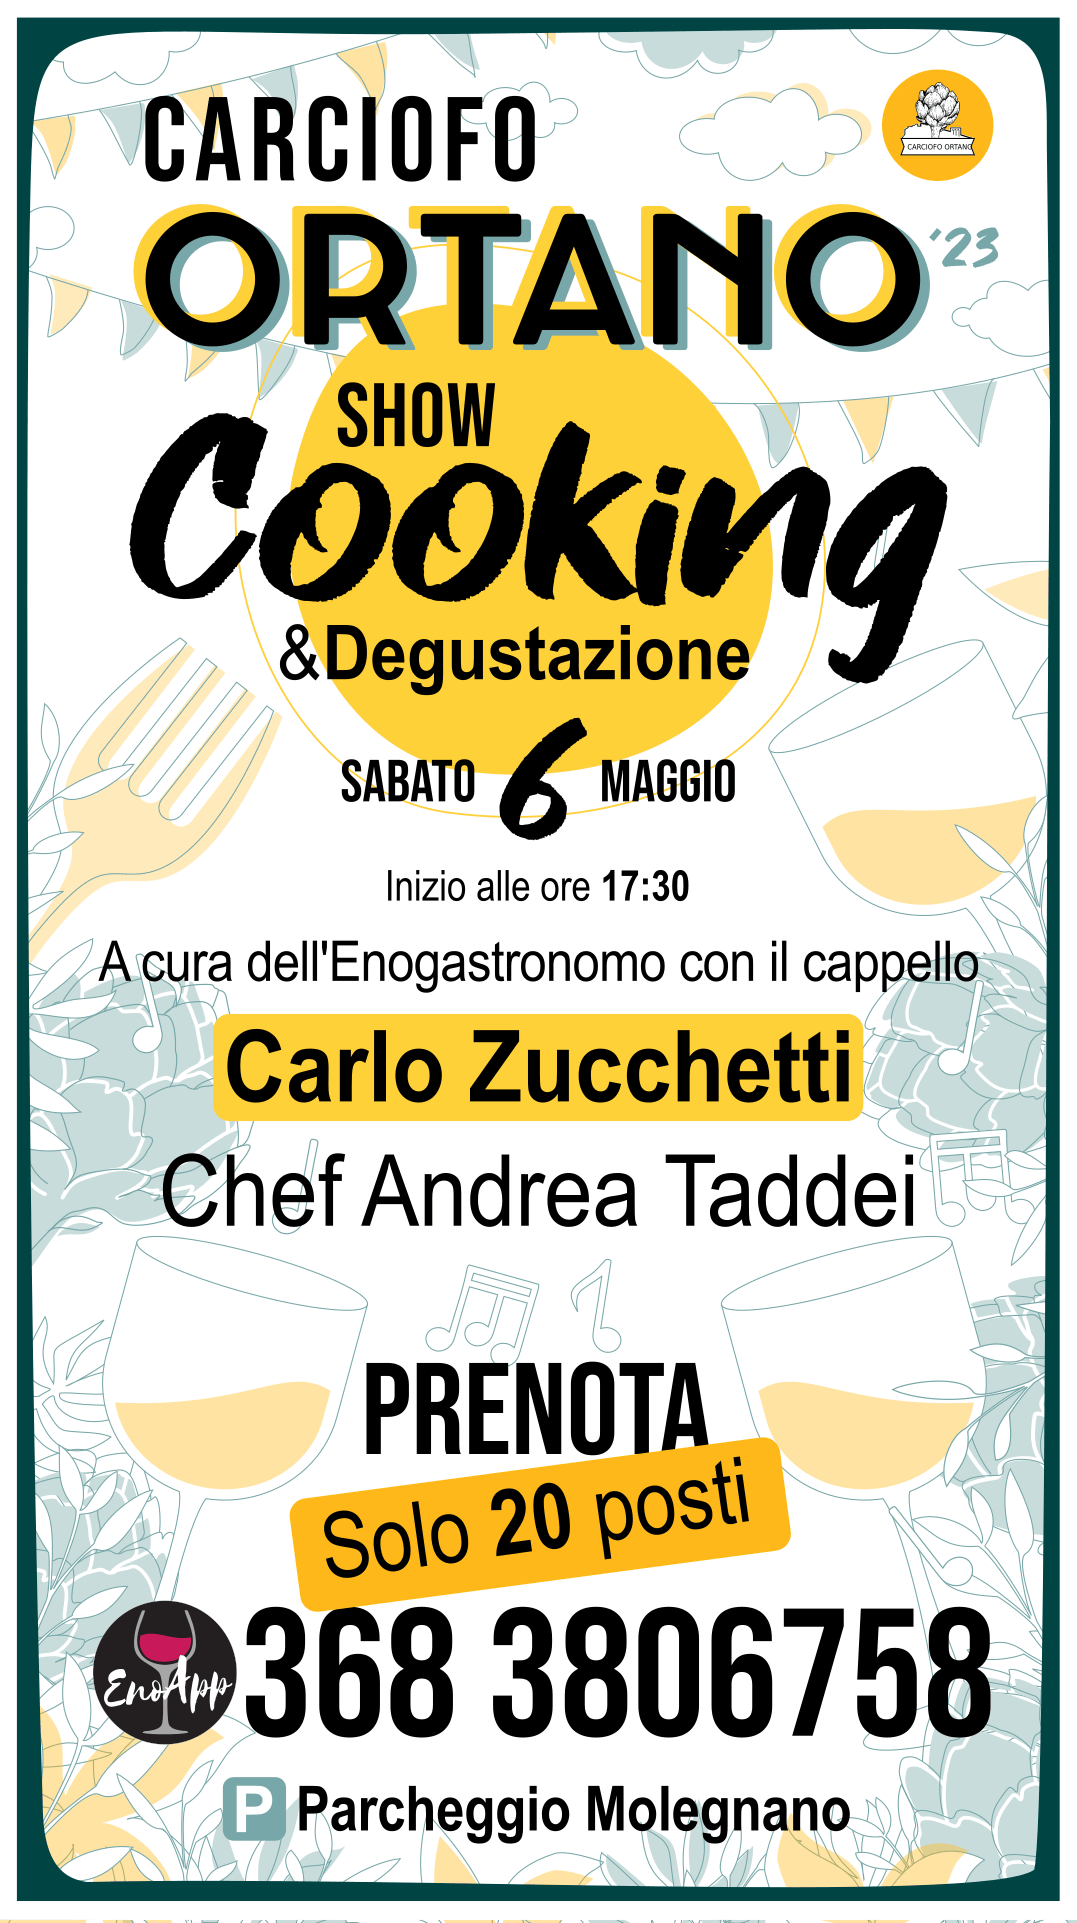 carciofo ortano fest. locandina show cooking con Carlo Zucchetti